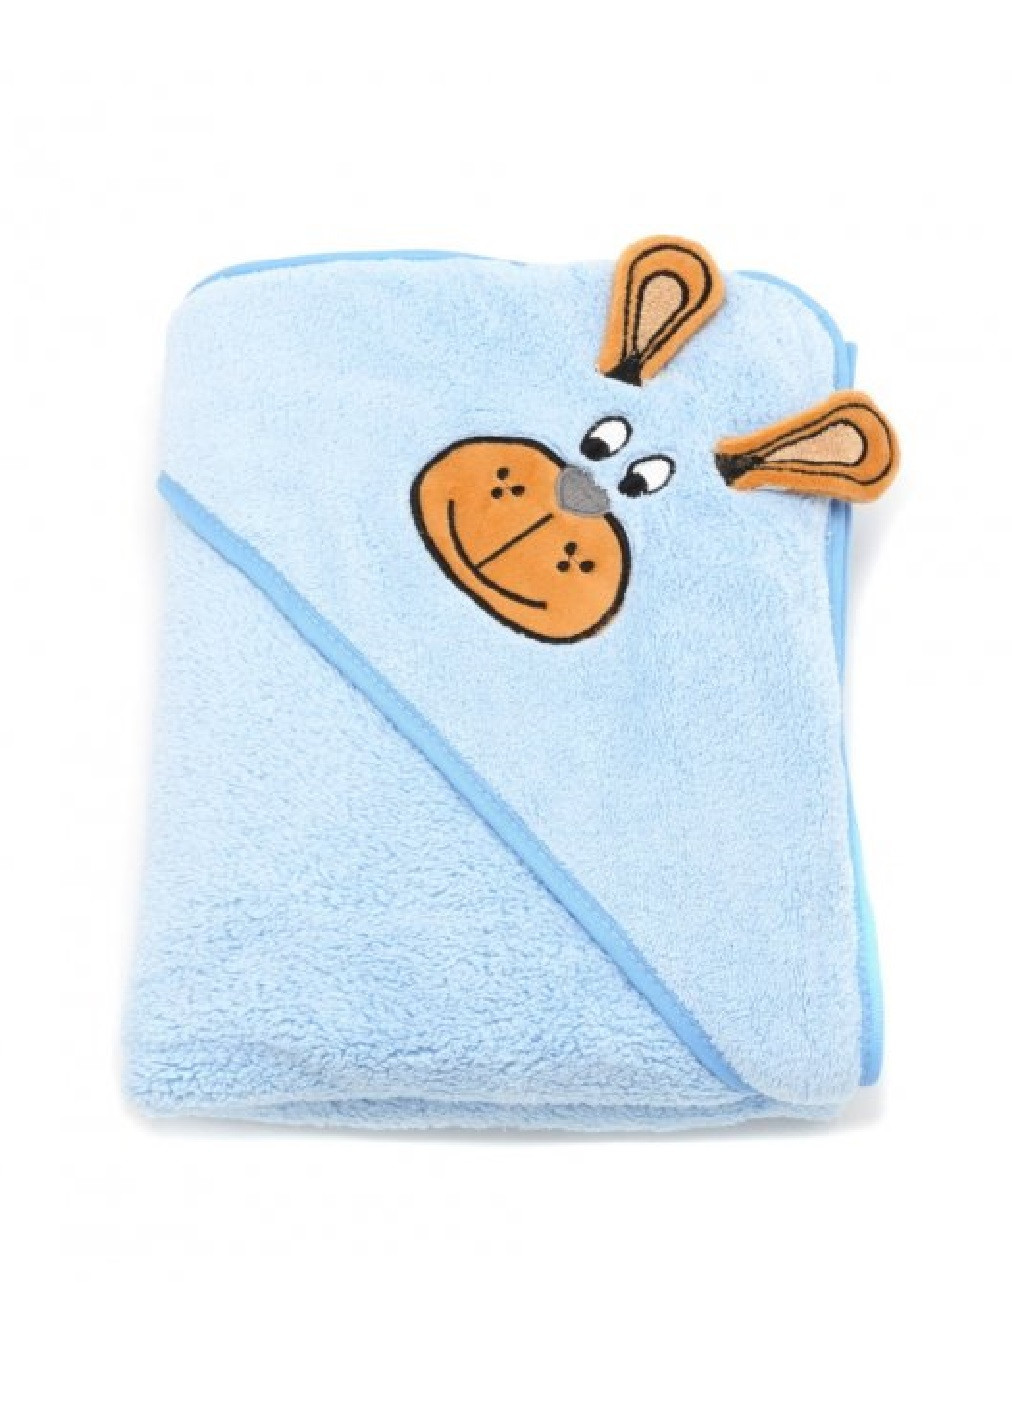 Unbranded полотенце с капюшоном пончо детское банное плед уголок конверт для купания 90х90 см (473222-prob) голубой однотонный голубой производство -